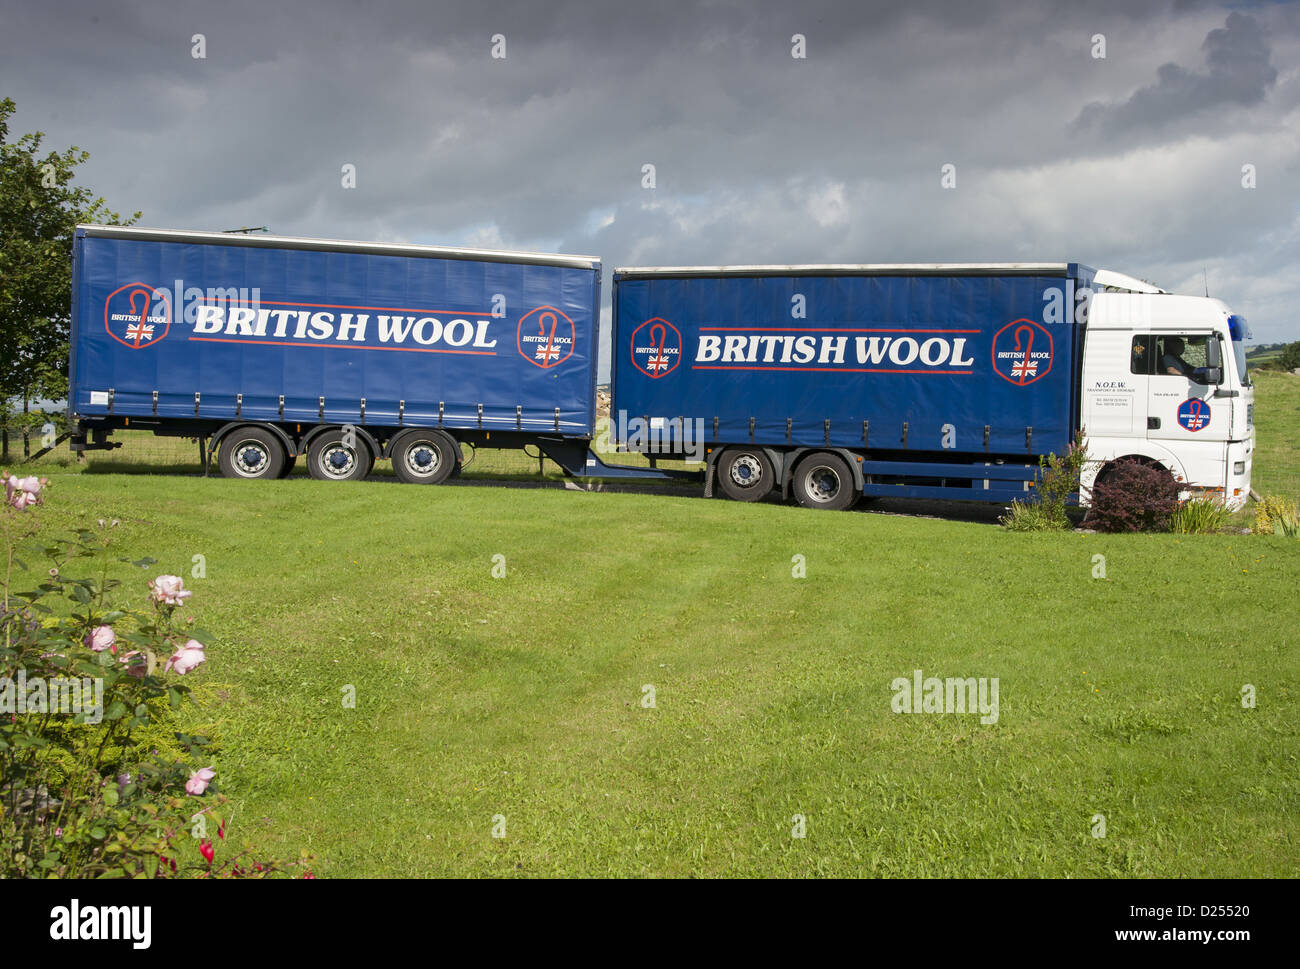 Britsh lana camion arriva a prendere in consegna delle balle di lana, Jervaulx, Masham, Ripon, North Yorkshire, Inghilterra, Agosto Foto Stock